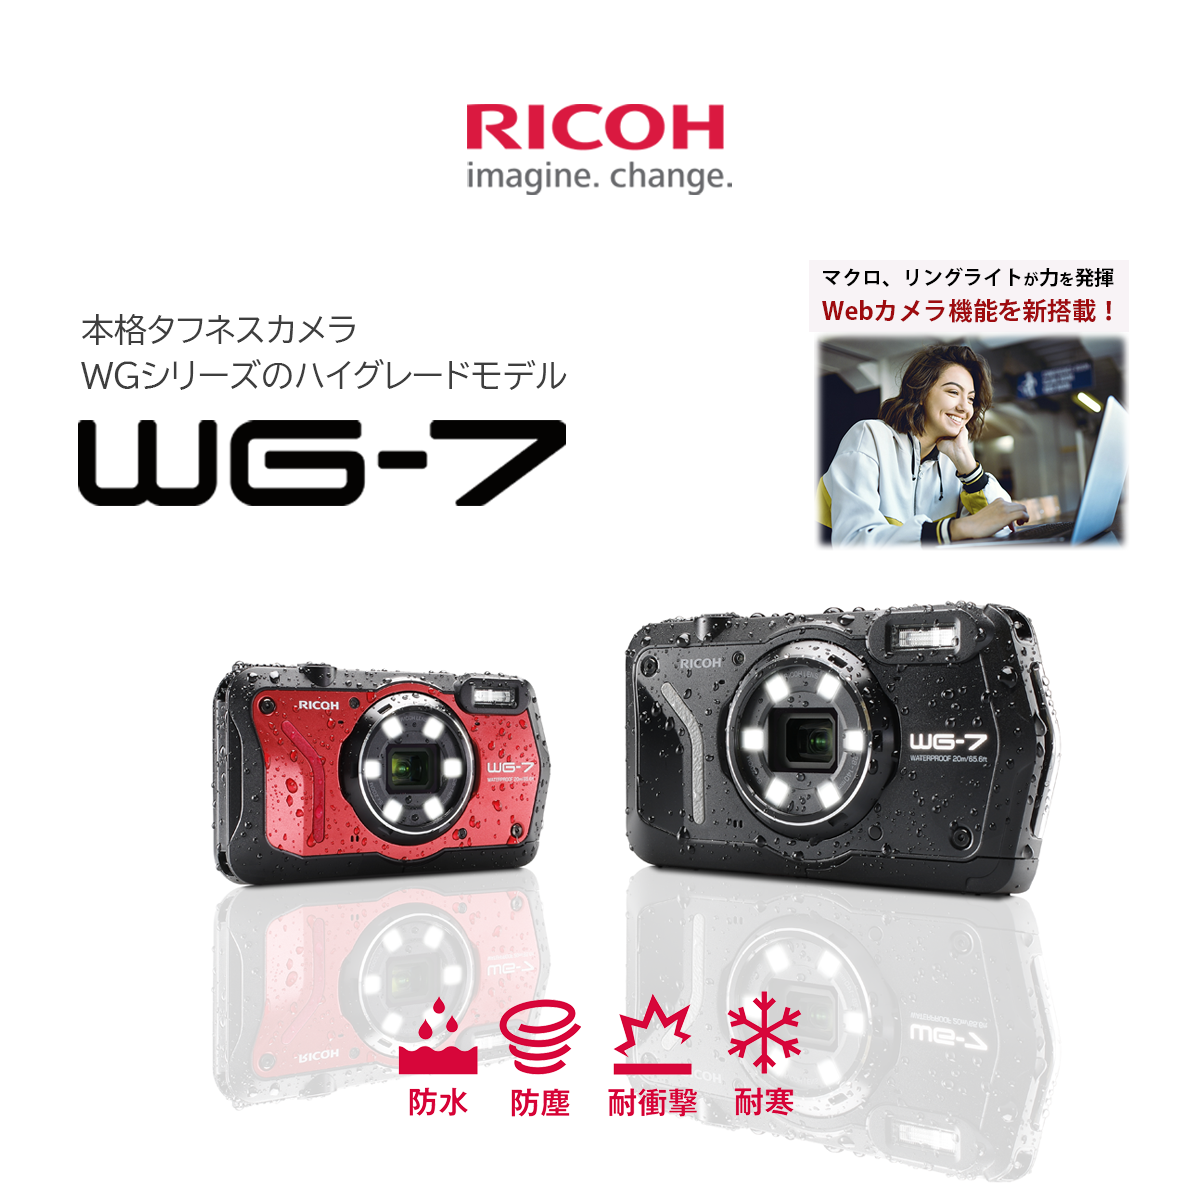 Khanka製 RICOH リコー WG-80 WG-70 WG-60 WG-50 WG-40 WG-30 デジタルカメラ 専用保護収納ケース